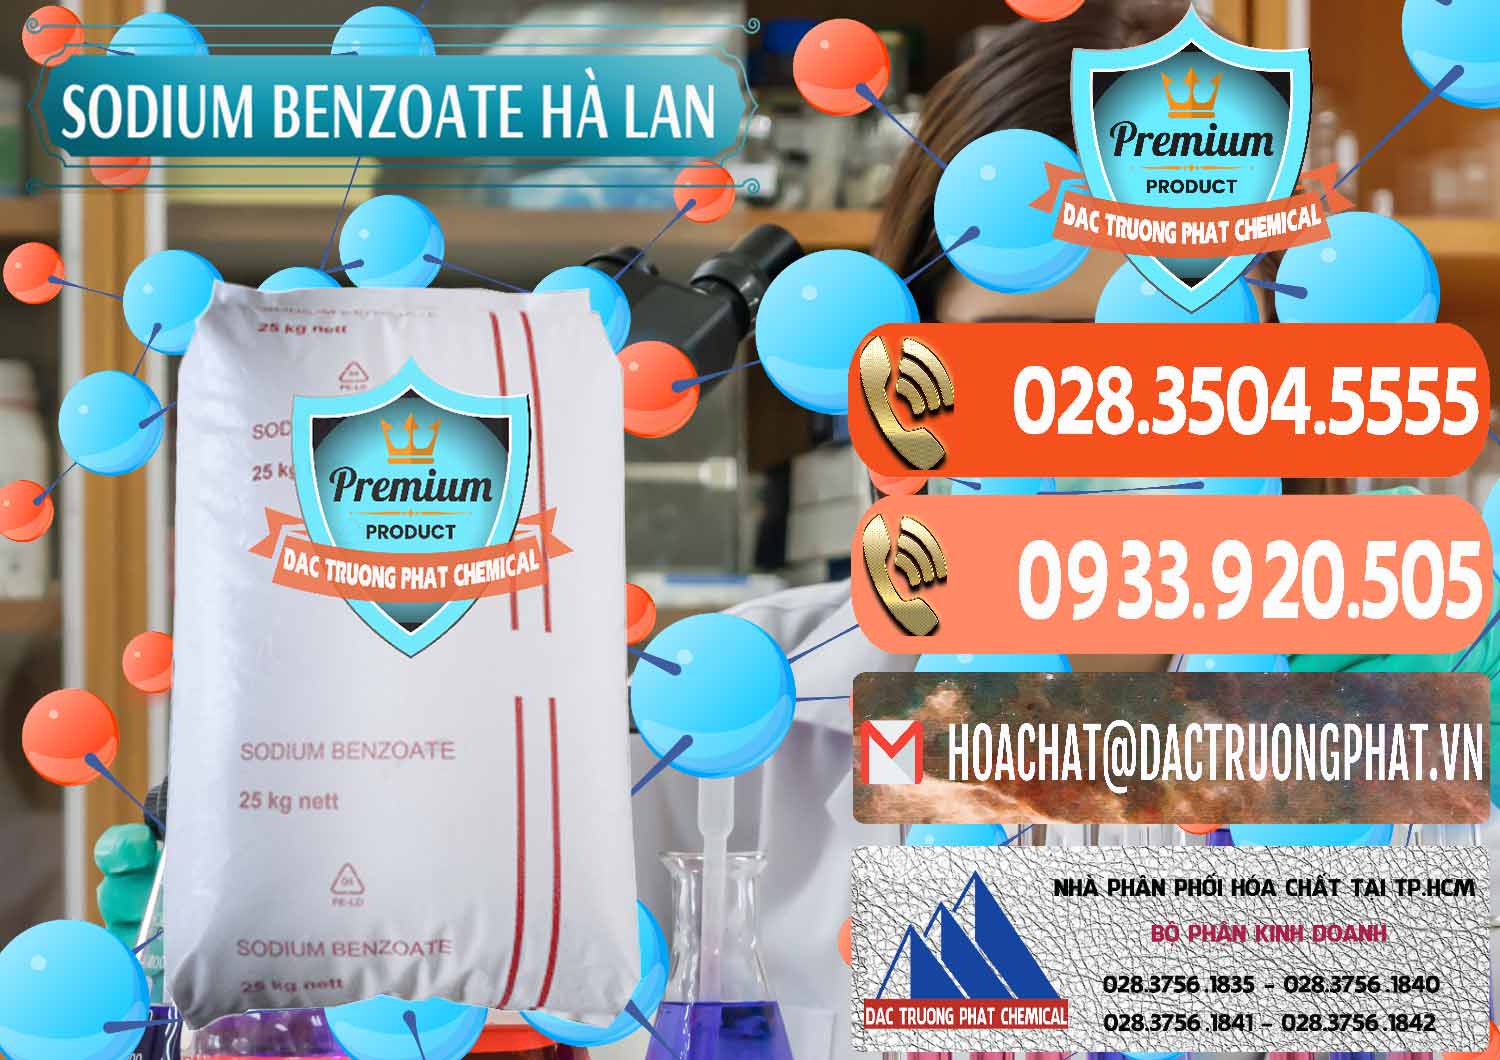 Chuyên bán & cung ứng Sodium Benzoate - Mốc Bột Chữ Cam Hà Lan Netherlands - 0360 - Chuyên phân phối - cung ứng hóa chất tại TP.HCM - hoachatmientay.com